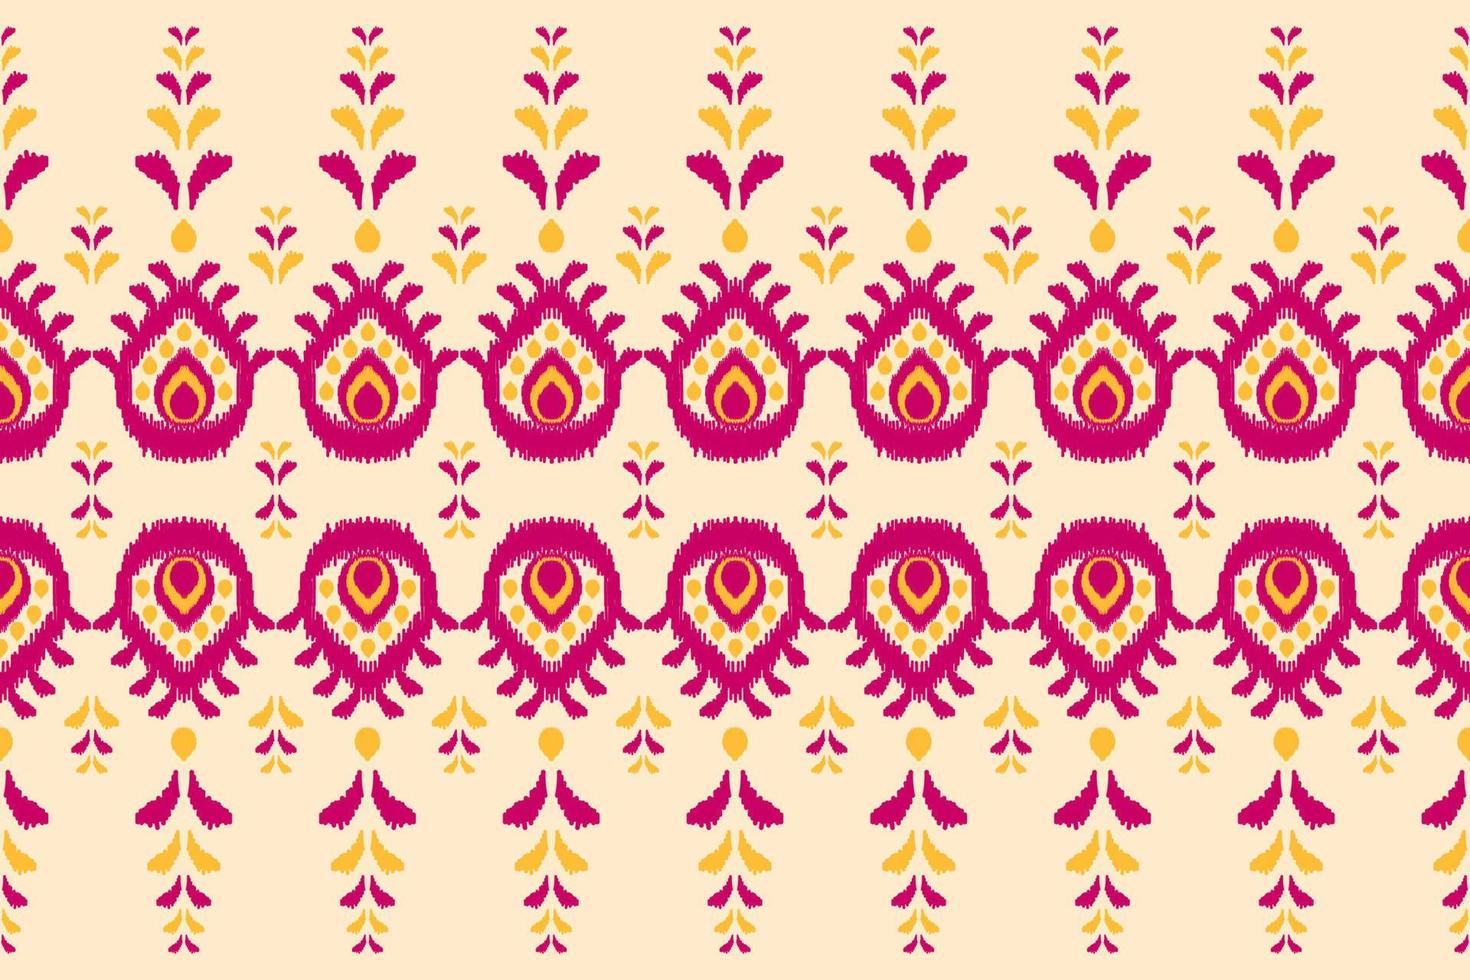 tapis motif fleur art. motif harmonieux d'ikat ethnique géométrique en tribal. style indien. vecteur